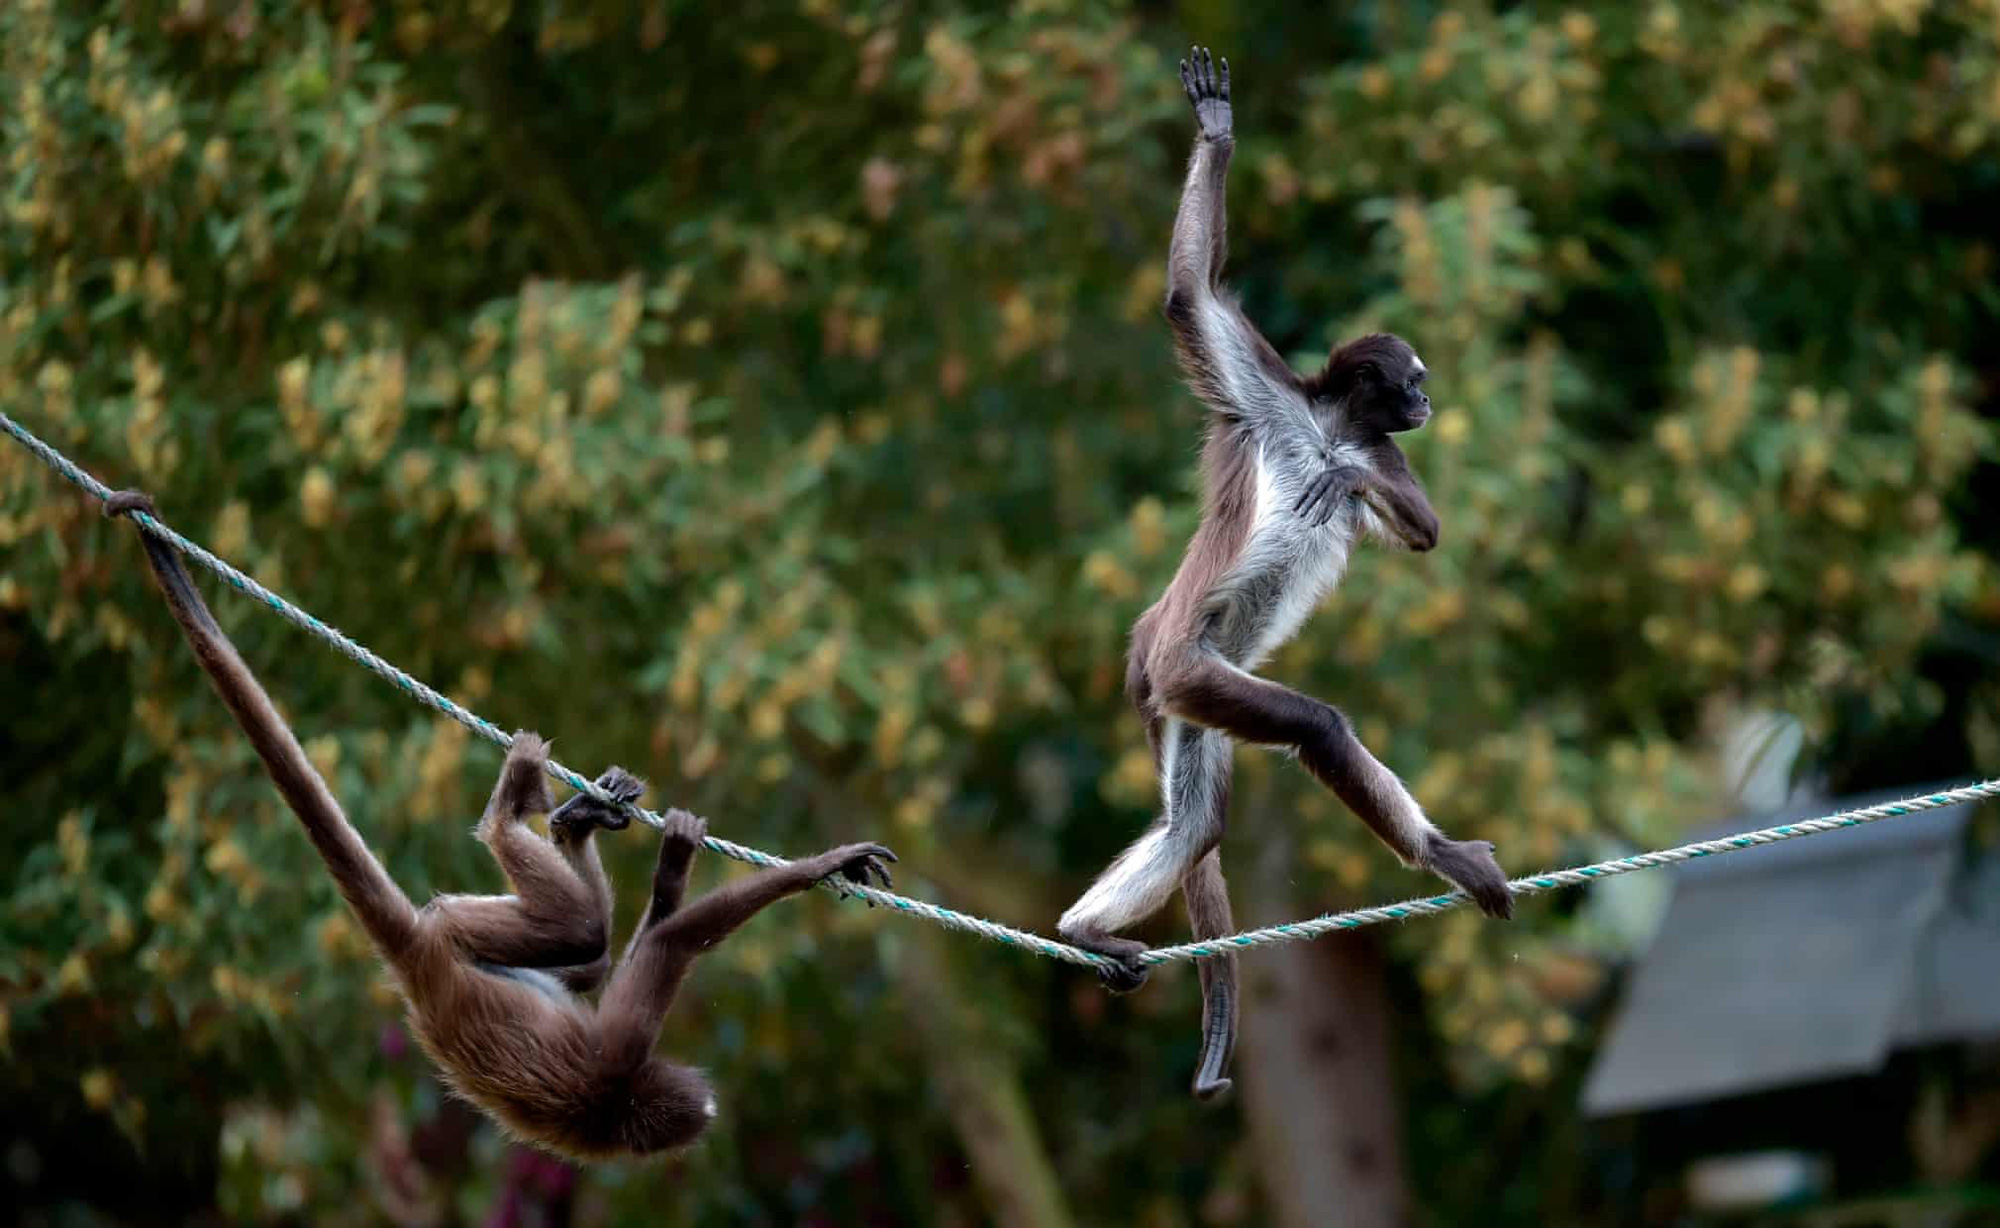 Khỉ đi bộ trên dây: Nếu bạn muốn thưởng thức một phong cách đi bộ đầy thách thức, hãy xem hình ảnh của những chú khỉ đi bộ trên dây. Chúng có sức mạnh và độ khéo léo xuất sắc để vượt qua những thử thách hỗn loạn của những chiếc dây đầy mạo hiểm nhất.